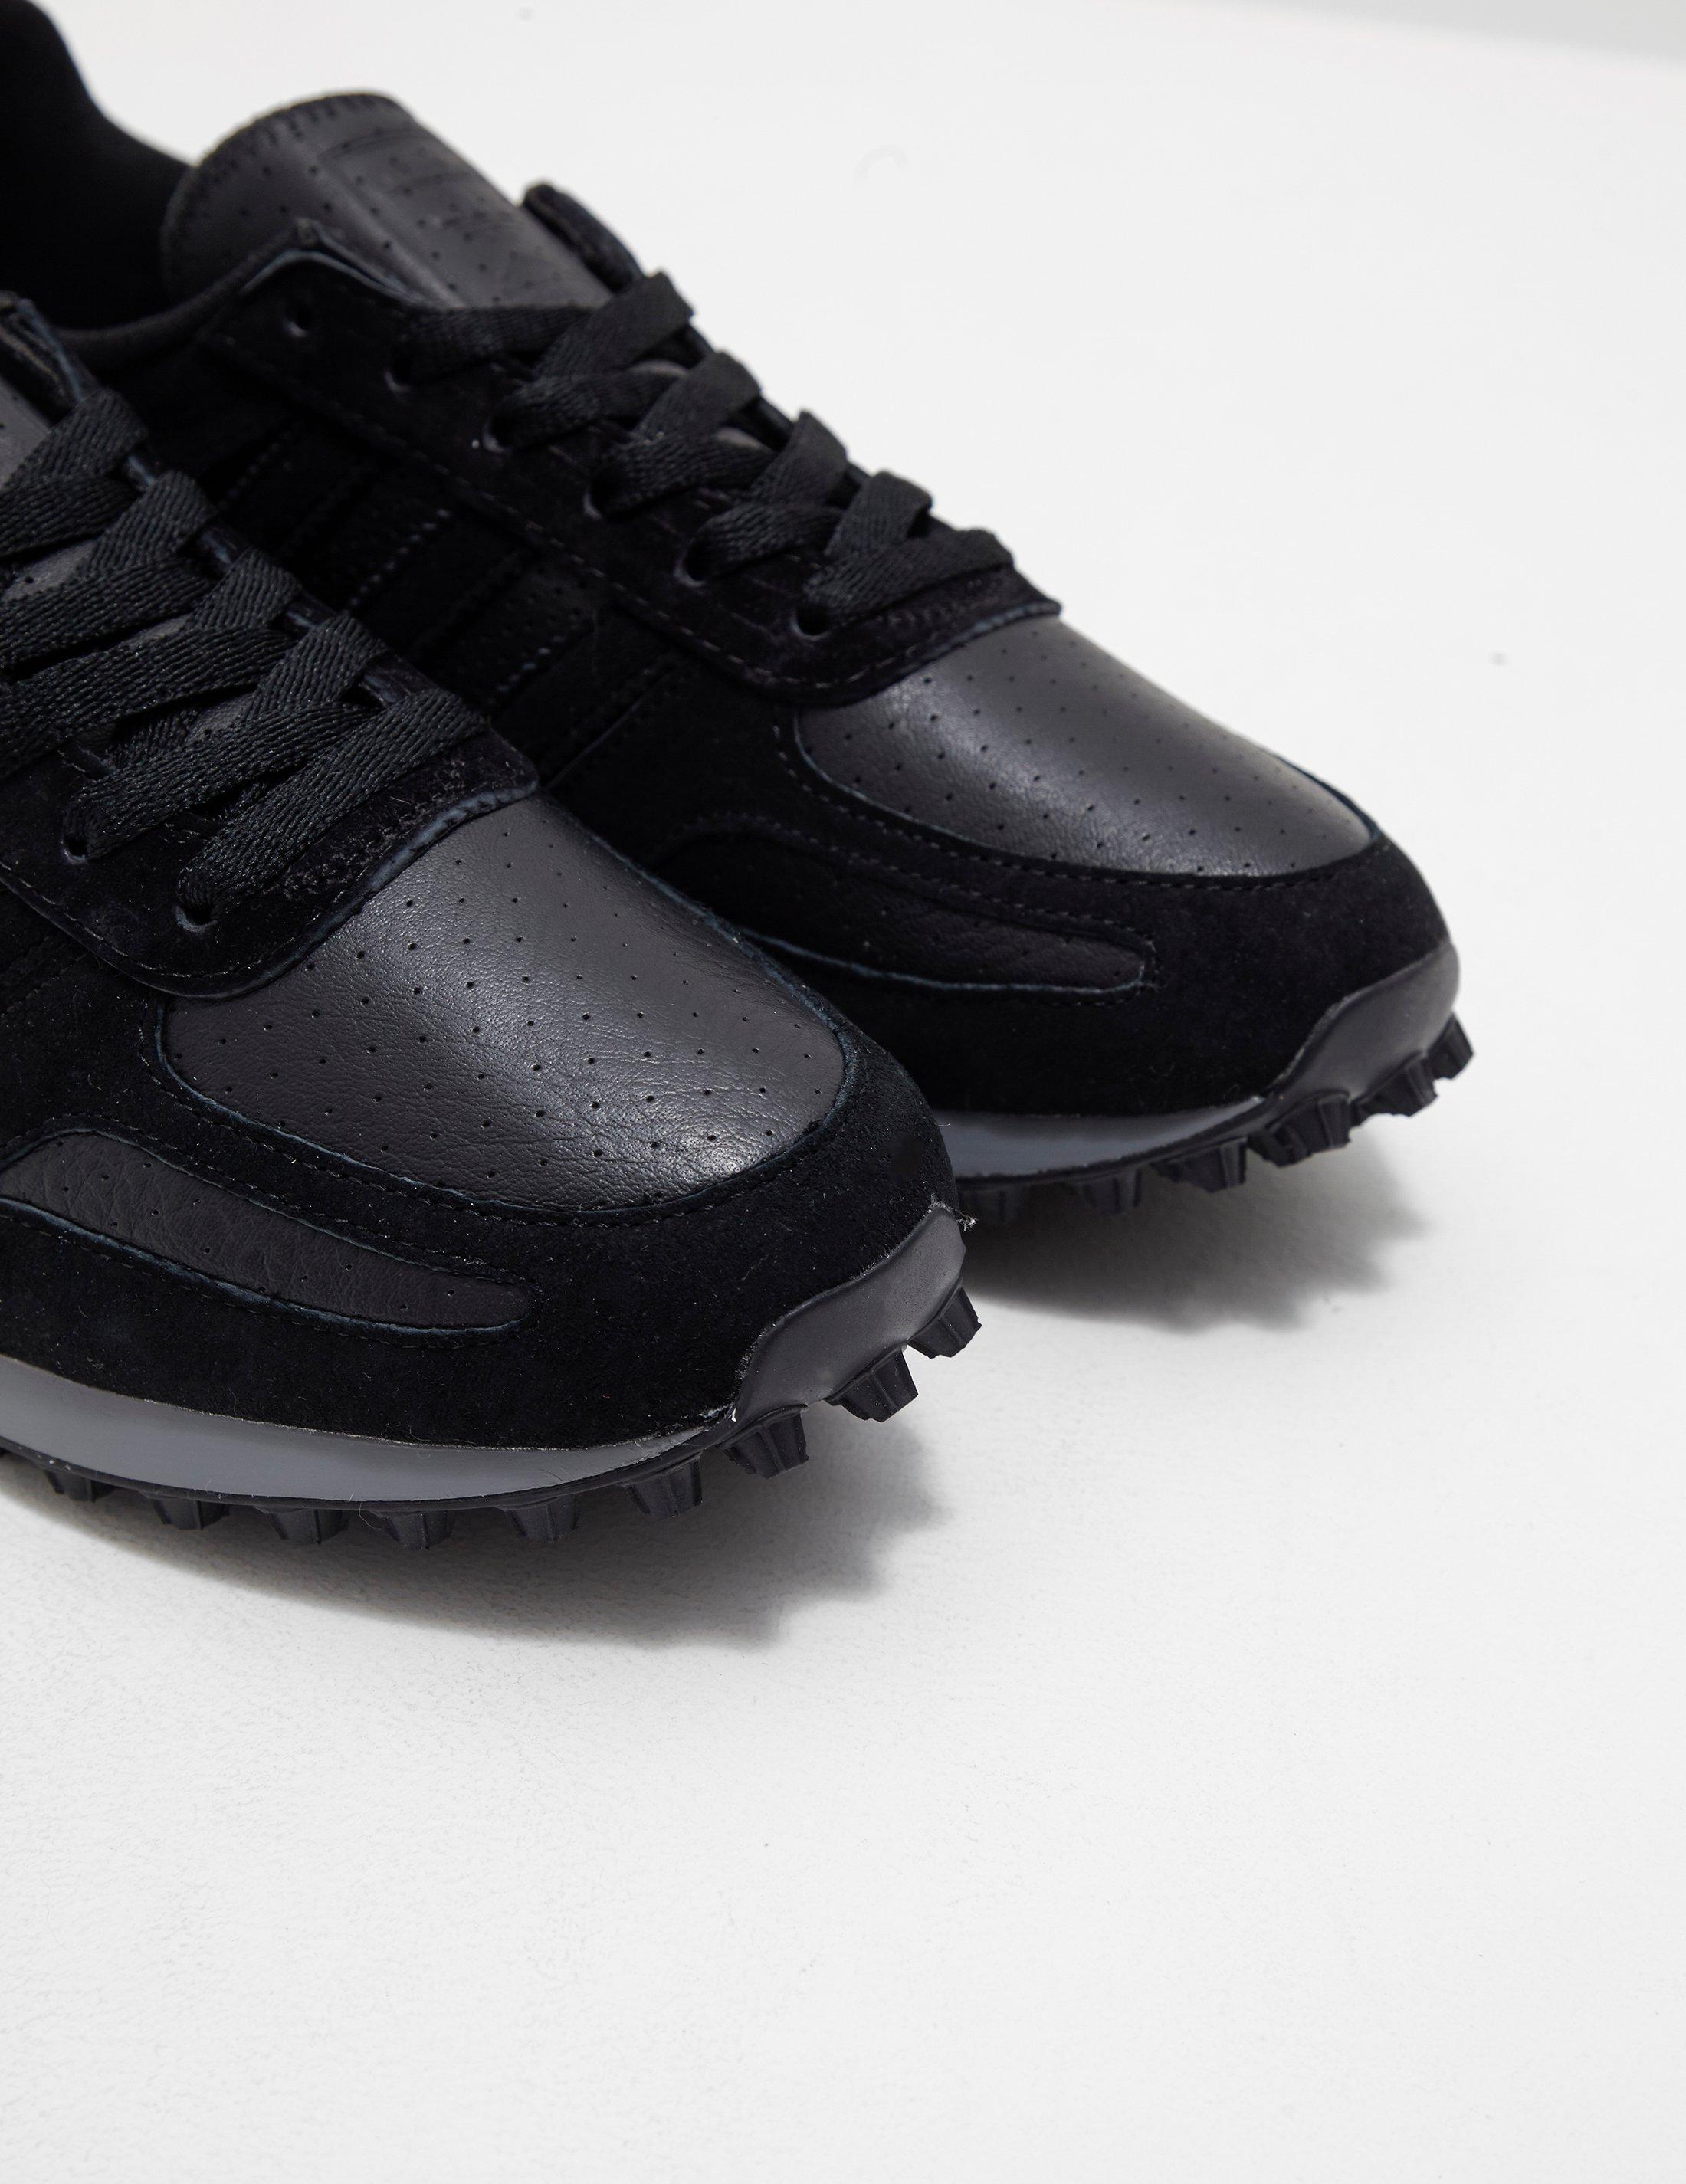 adidas originals la trainer black leather